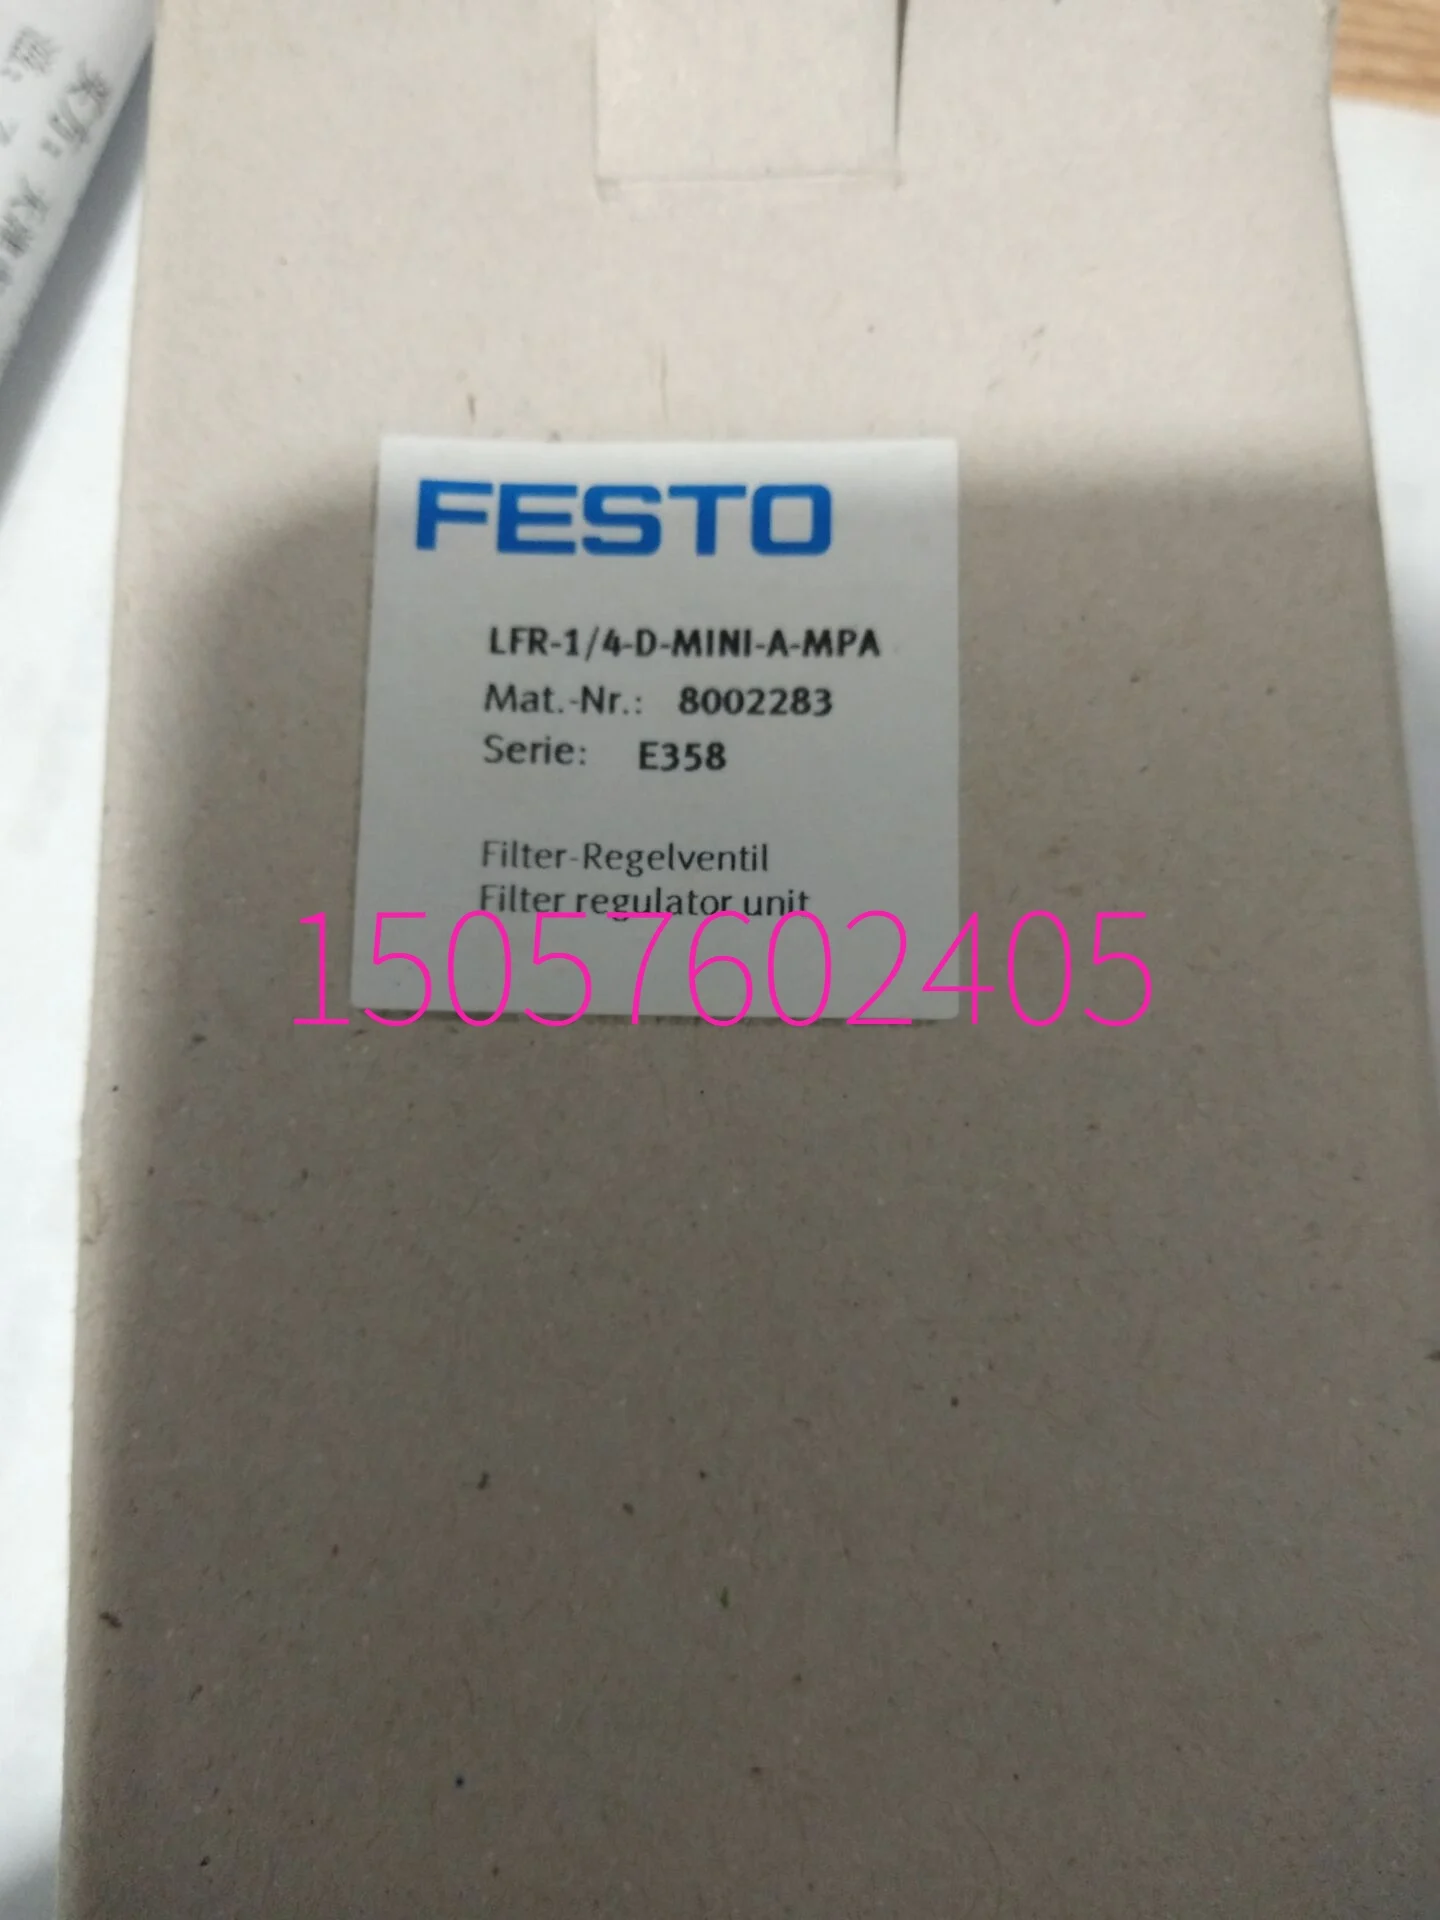 

FESTO Festo Filter Pressure Reducing Valve LFR-1/4-D-MINI-A-MPA 8002283 In Stock.